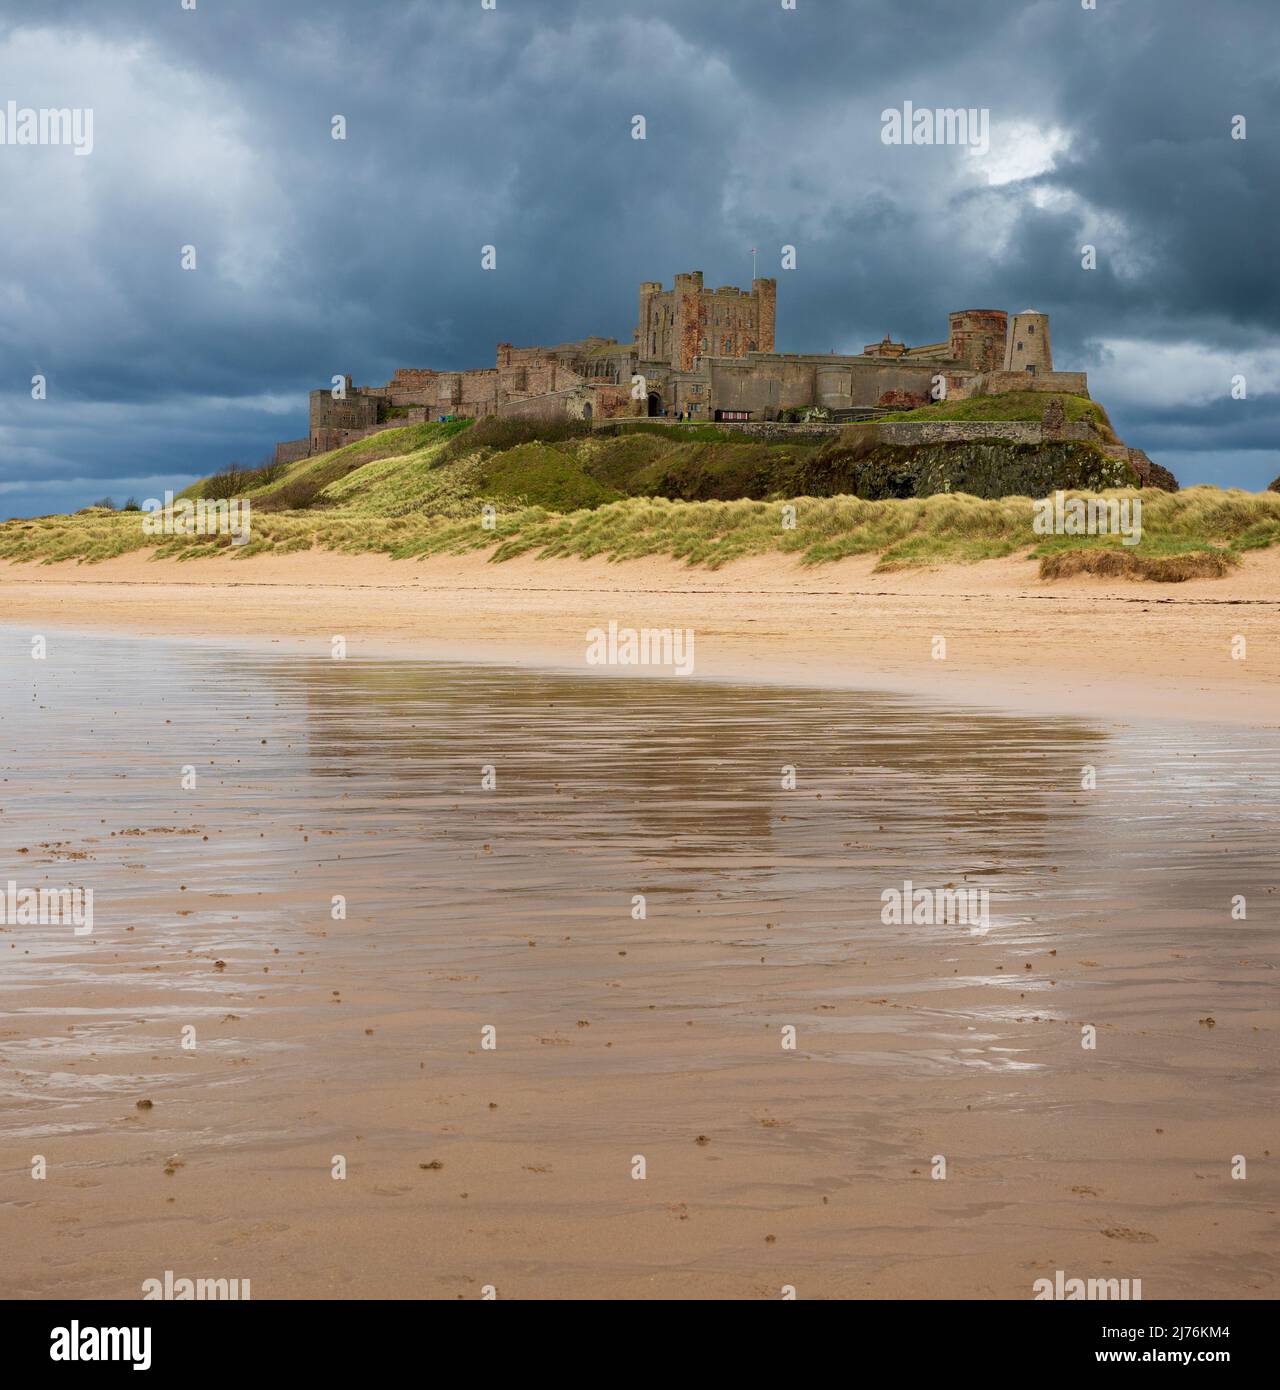 Château de Bamburgh sur la côte de Northumberland. Autrefois la résidence des Rois de Northumbria, cet imposant château fut beaucoup restauré au XIXe Banque D'Images